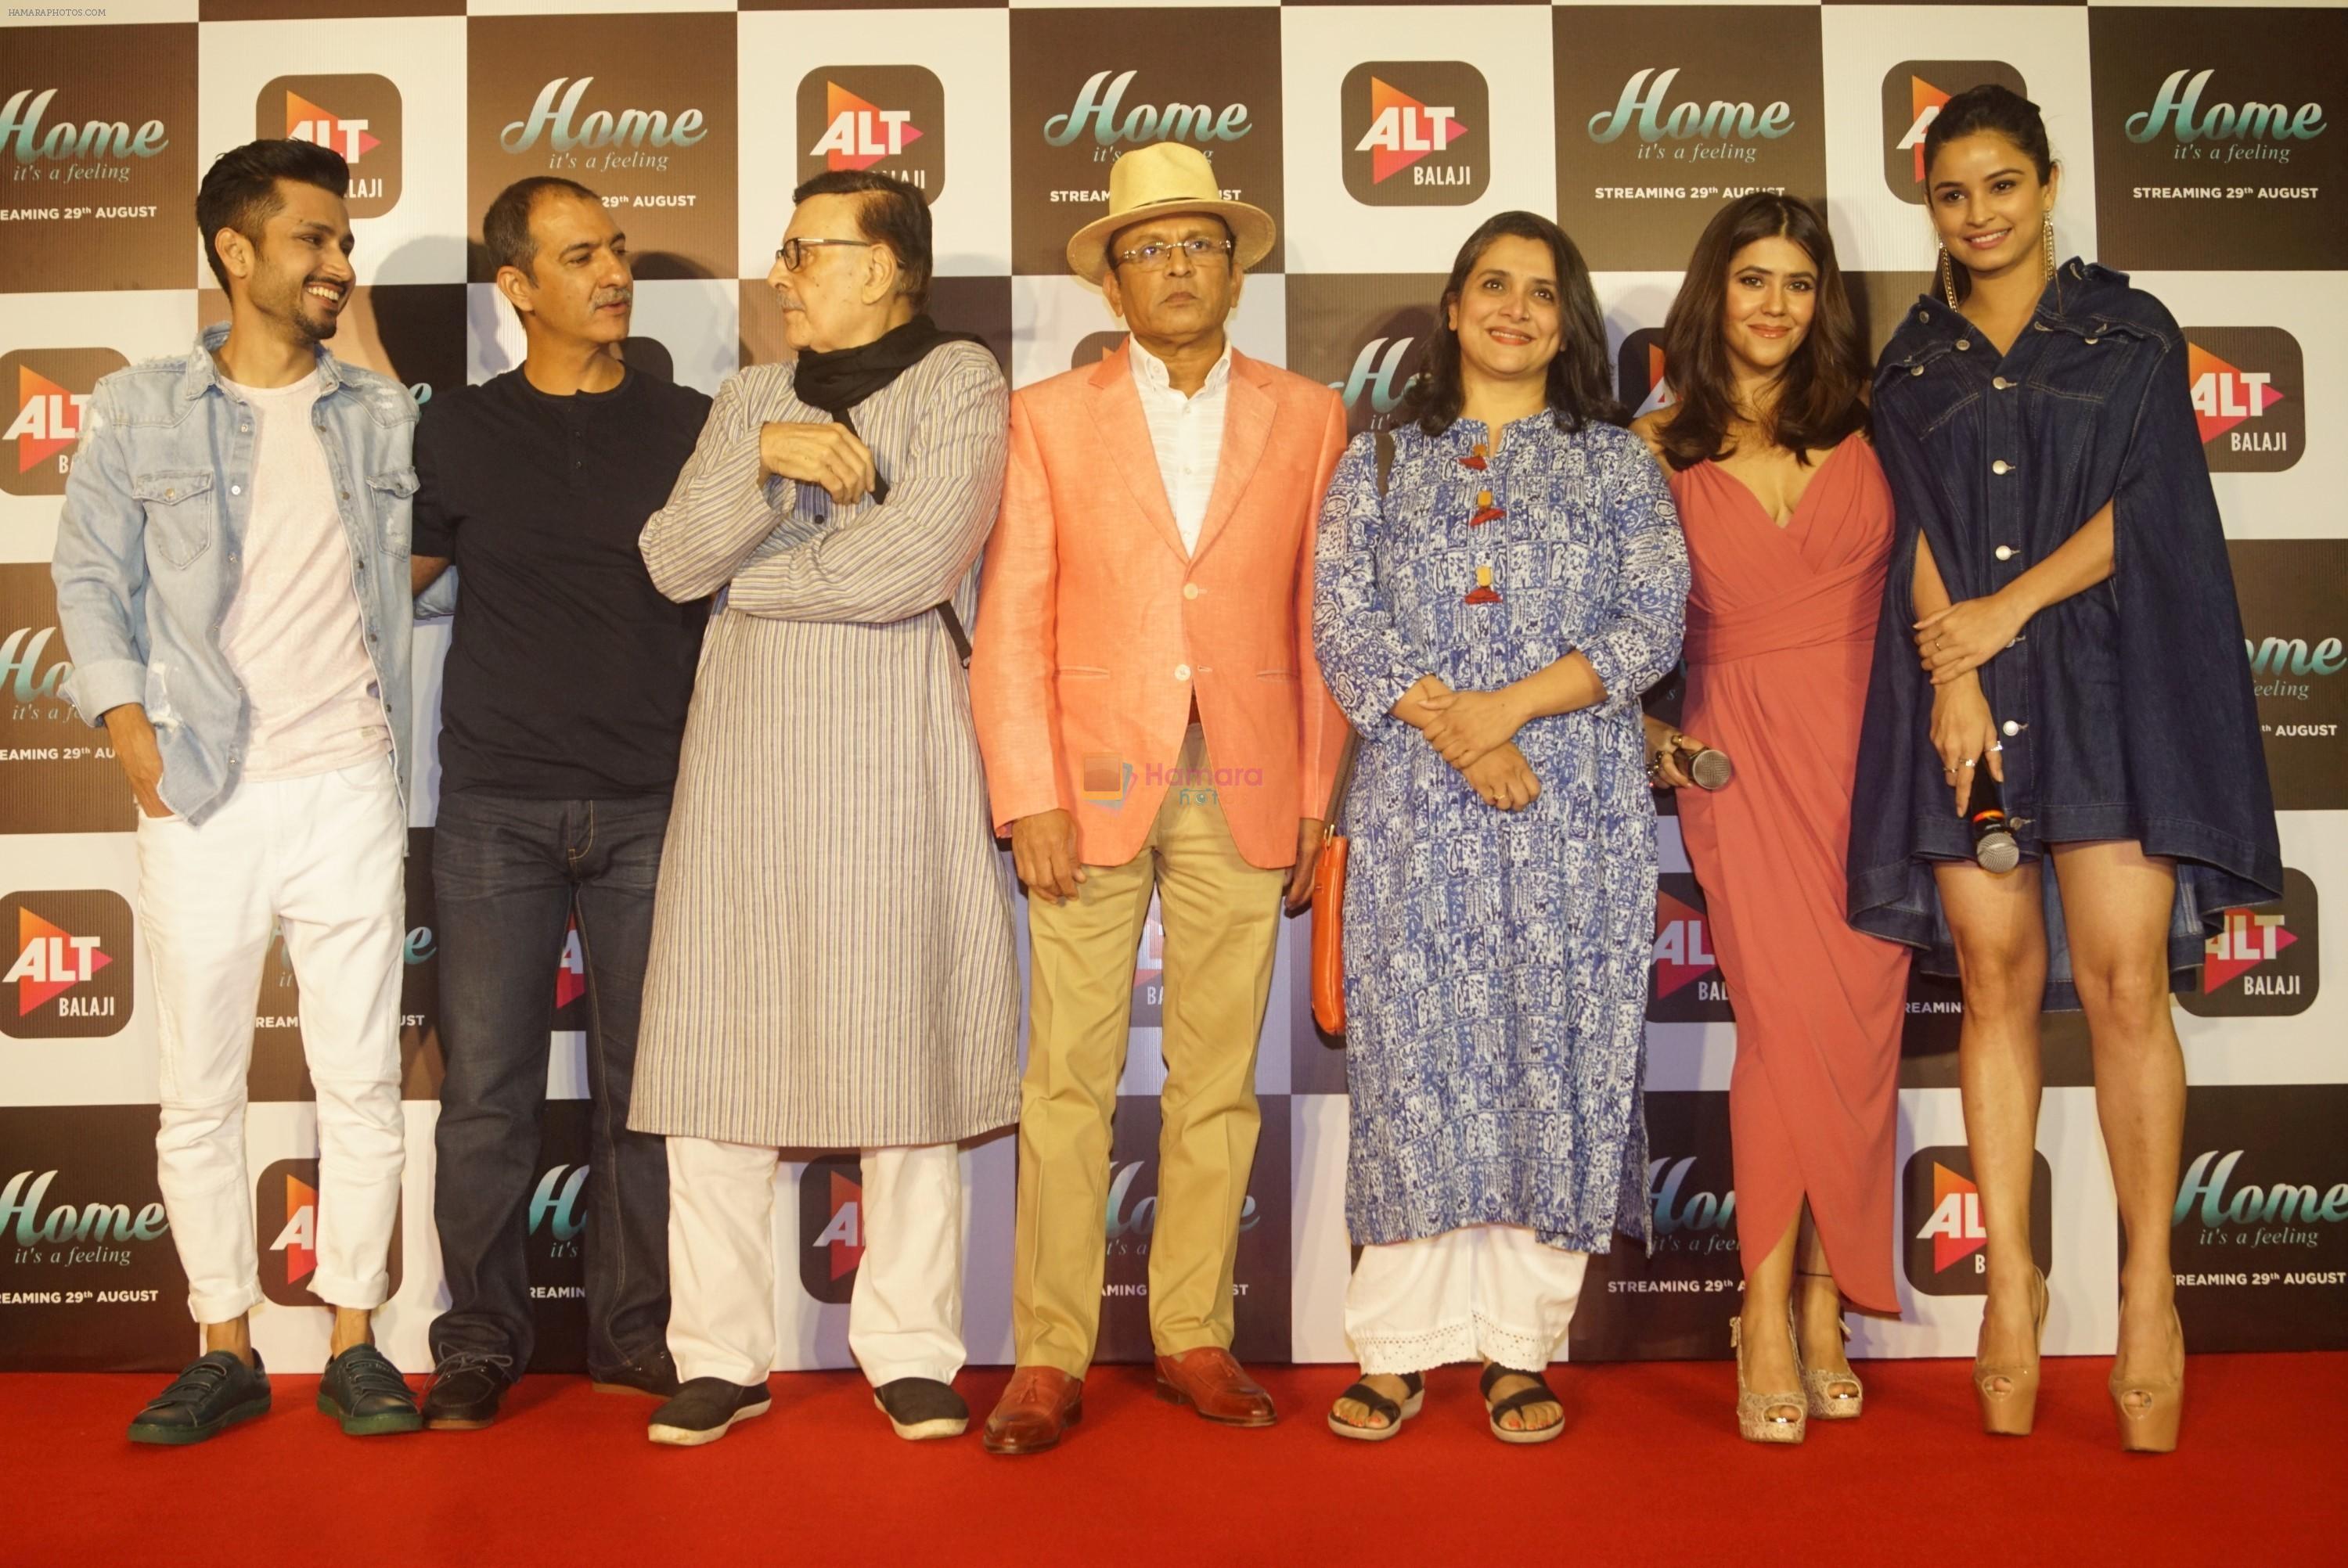 Ekta Kapoor, Annu Kapoor, Habib Faisal, Supriya Pilgaonkar, Parikshit Sahni, Amol Parashar, Chetna Pande at the Trailer Launch Of Upcoming Alt Balaji's Web Series Home on 15th Aug 2018